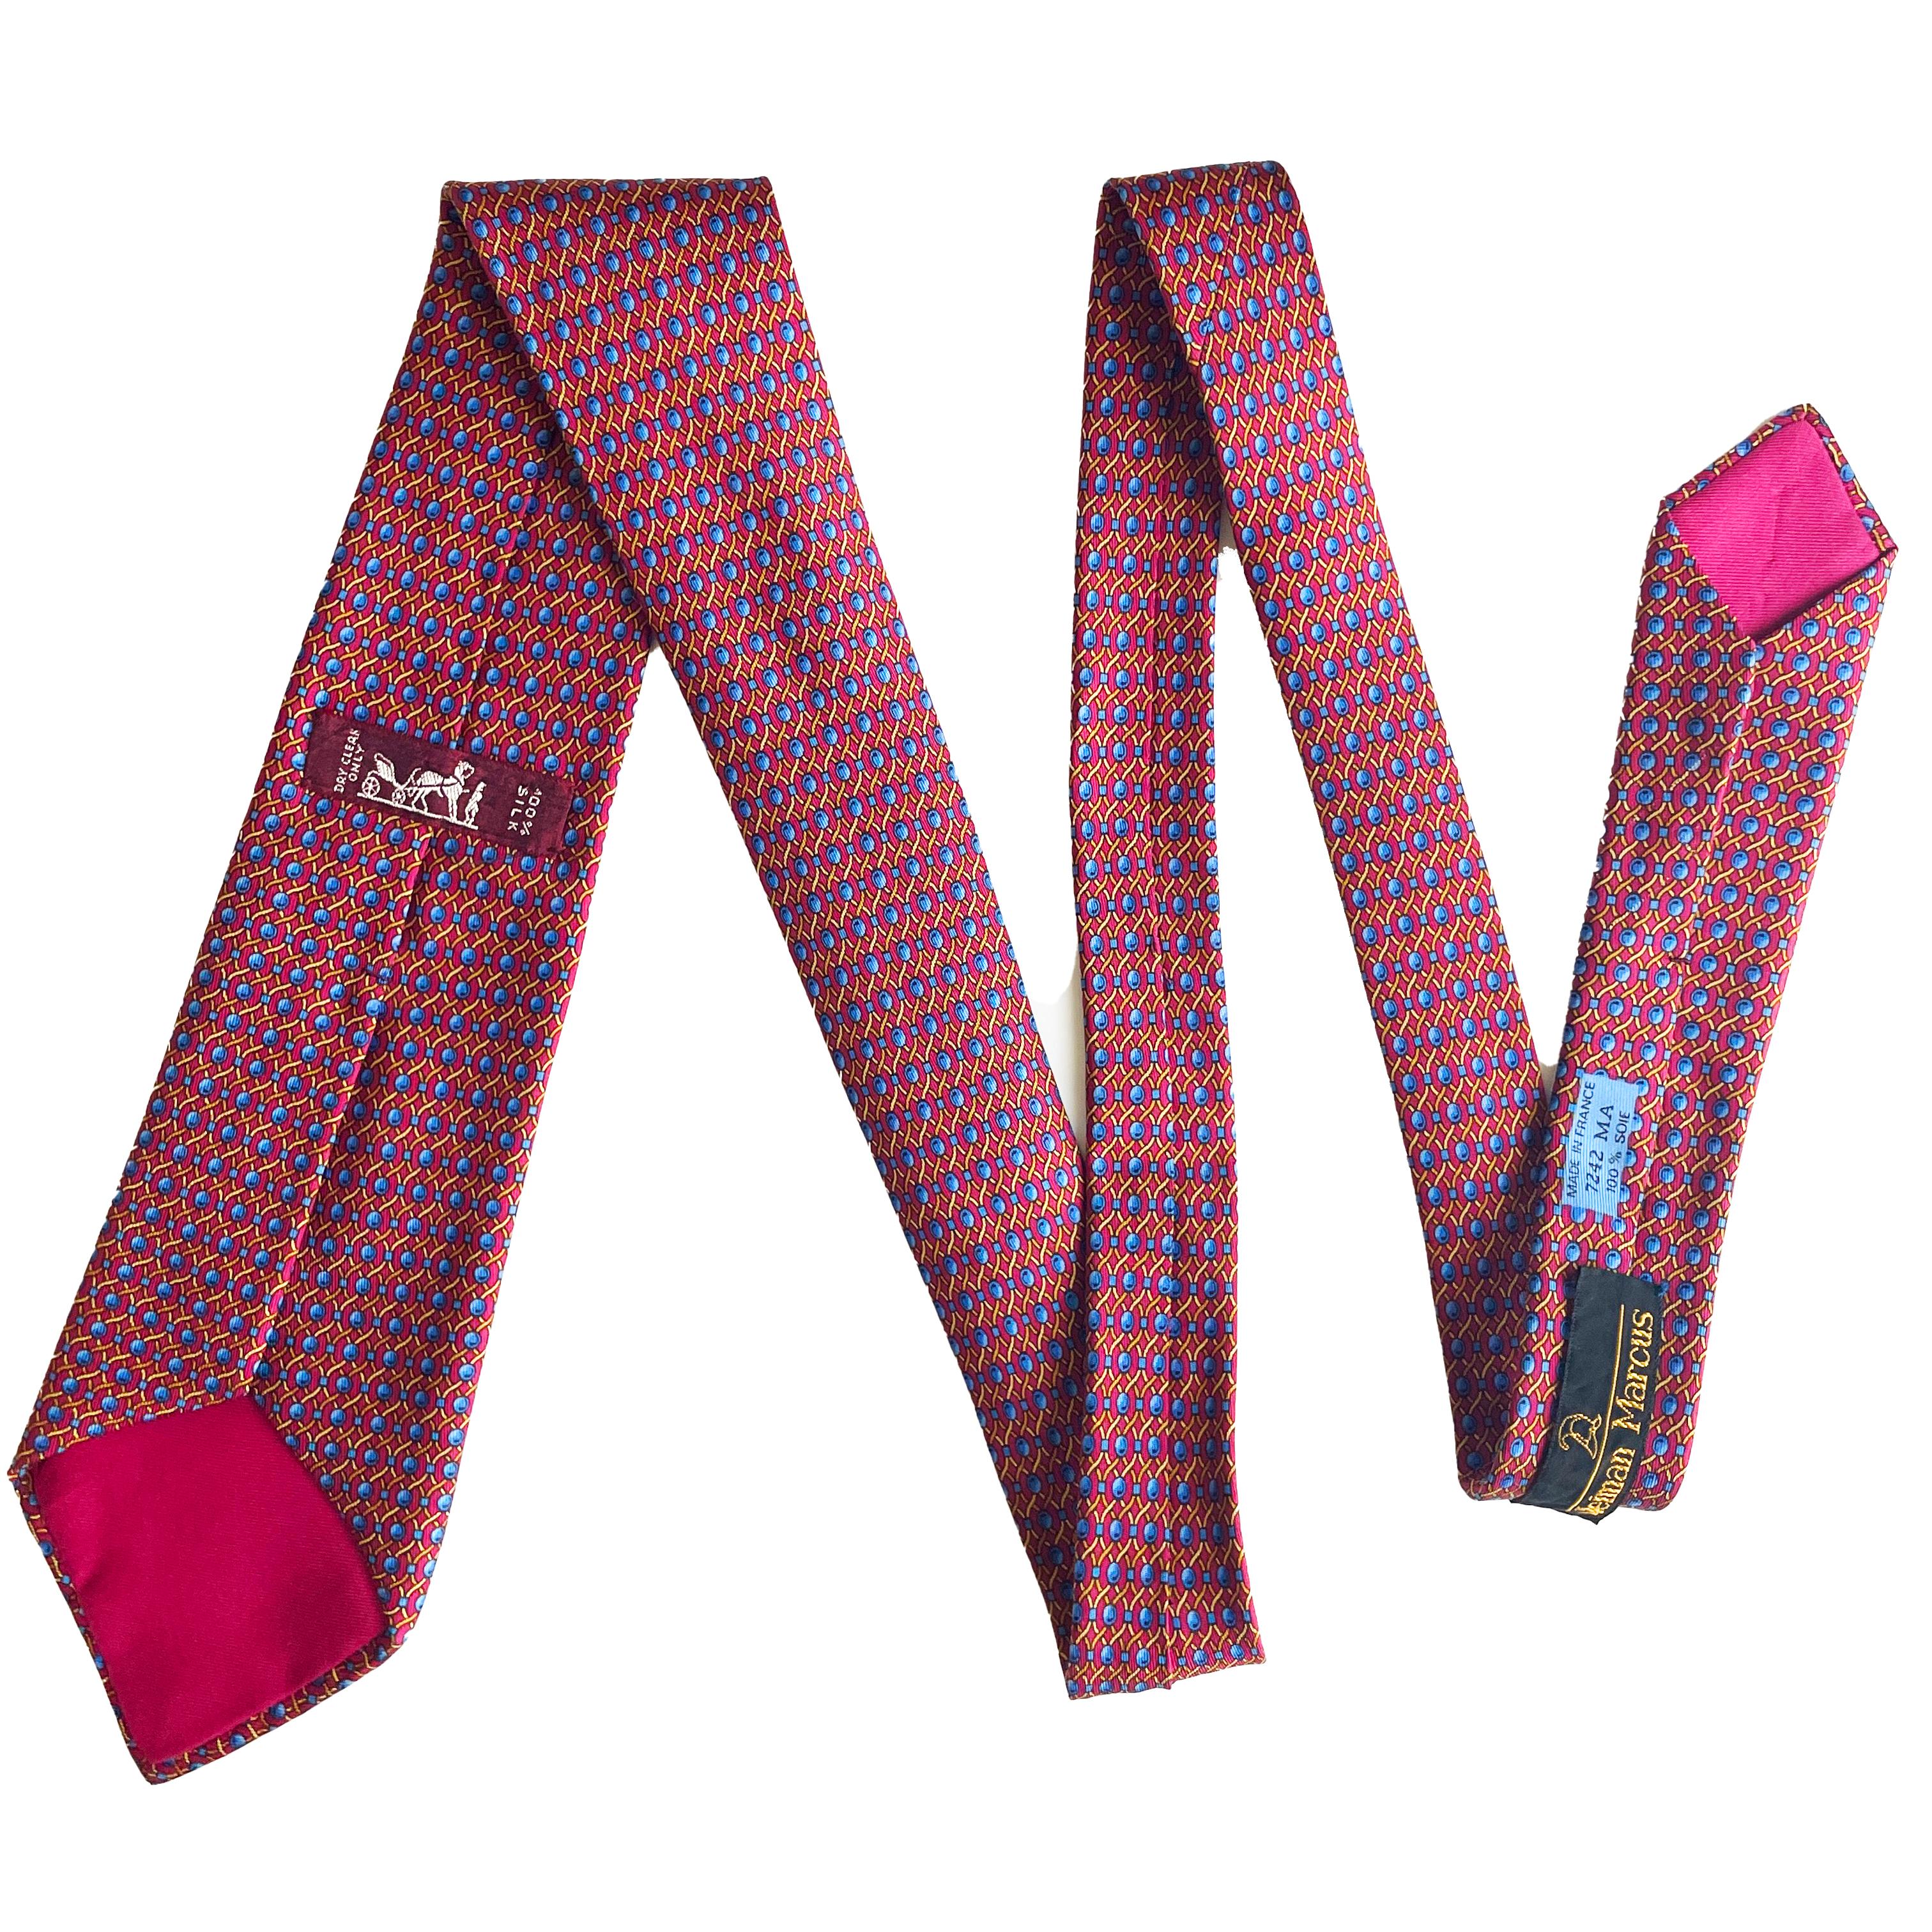  Cravate Hermès en soie imprimée corde abstraite 7242 MA 1990 Pour hommes 